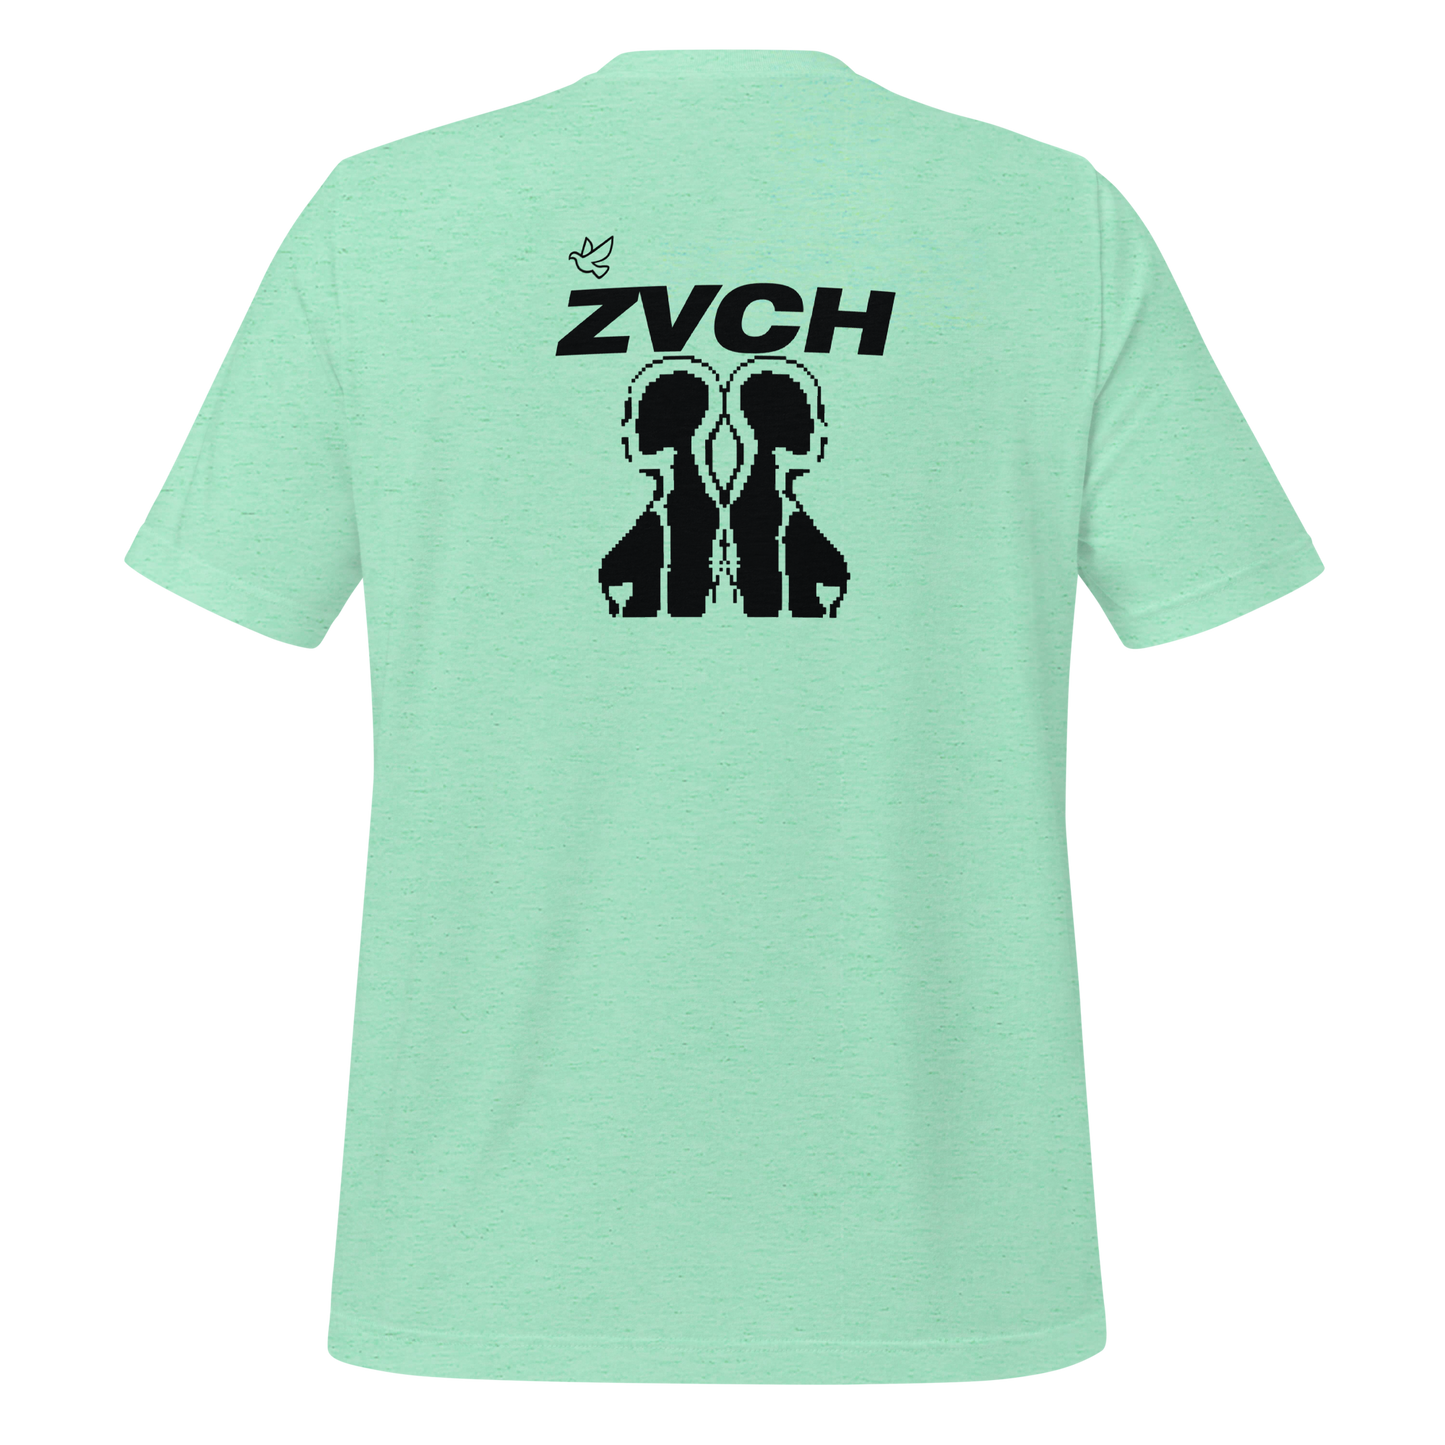 Zvch Likehurr T-Shirt